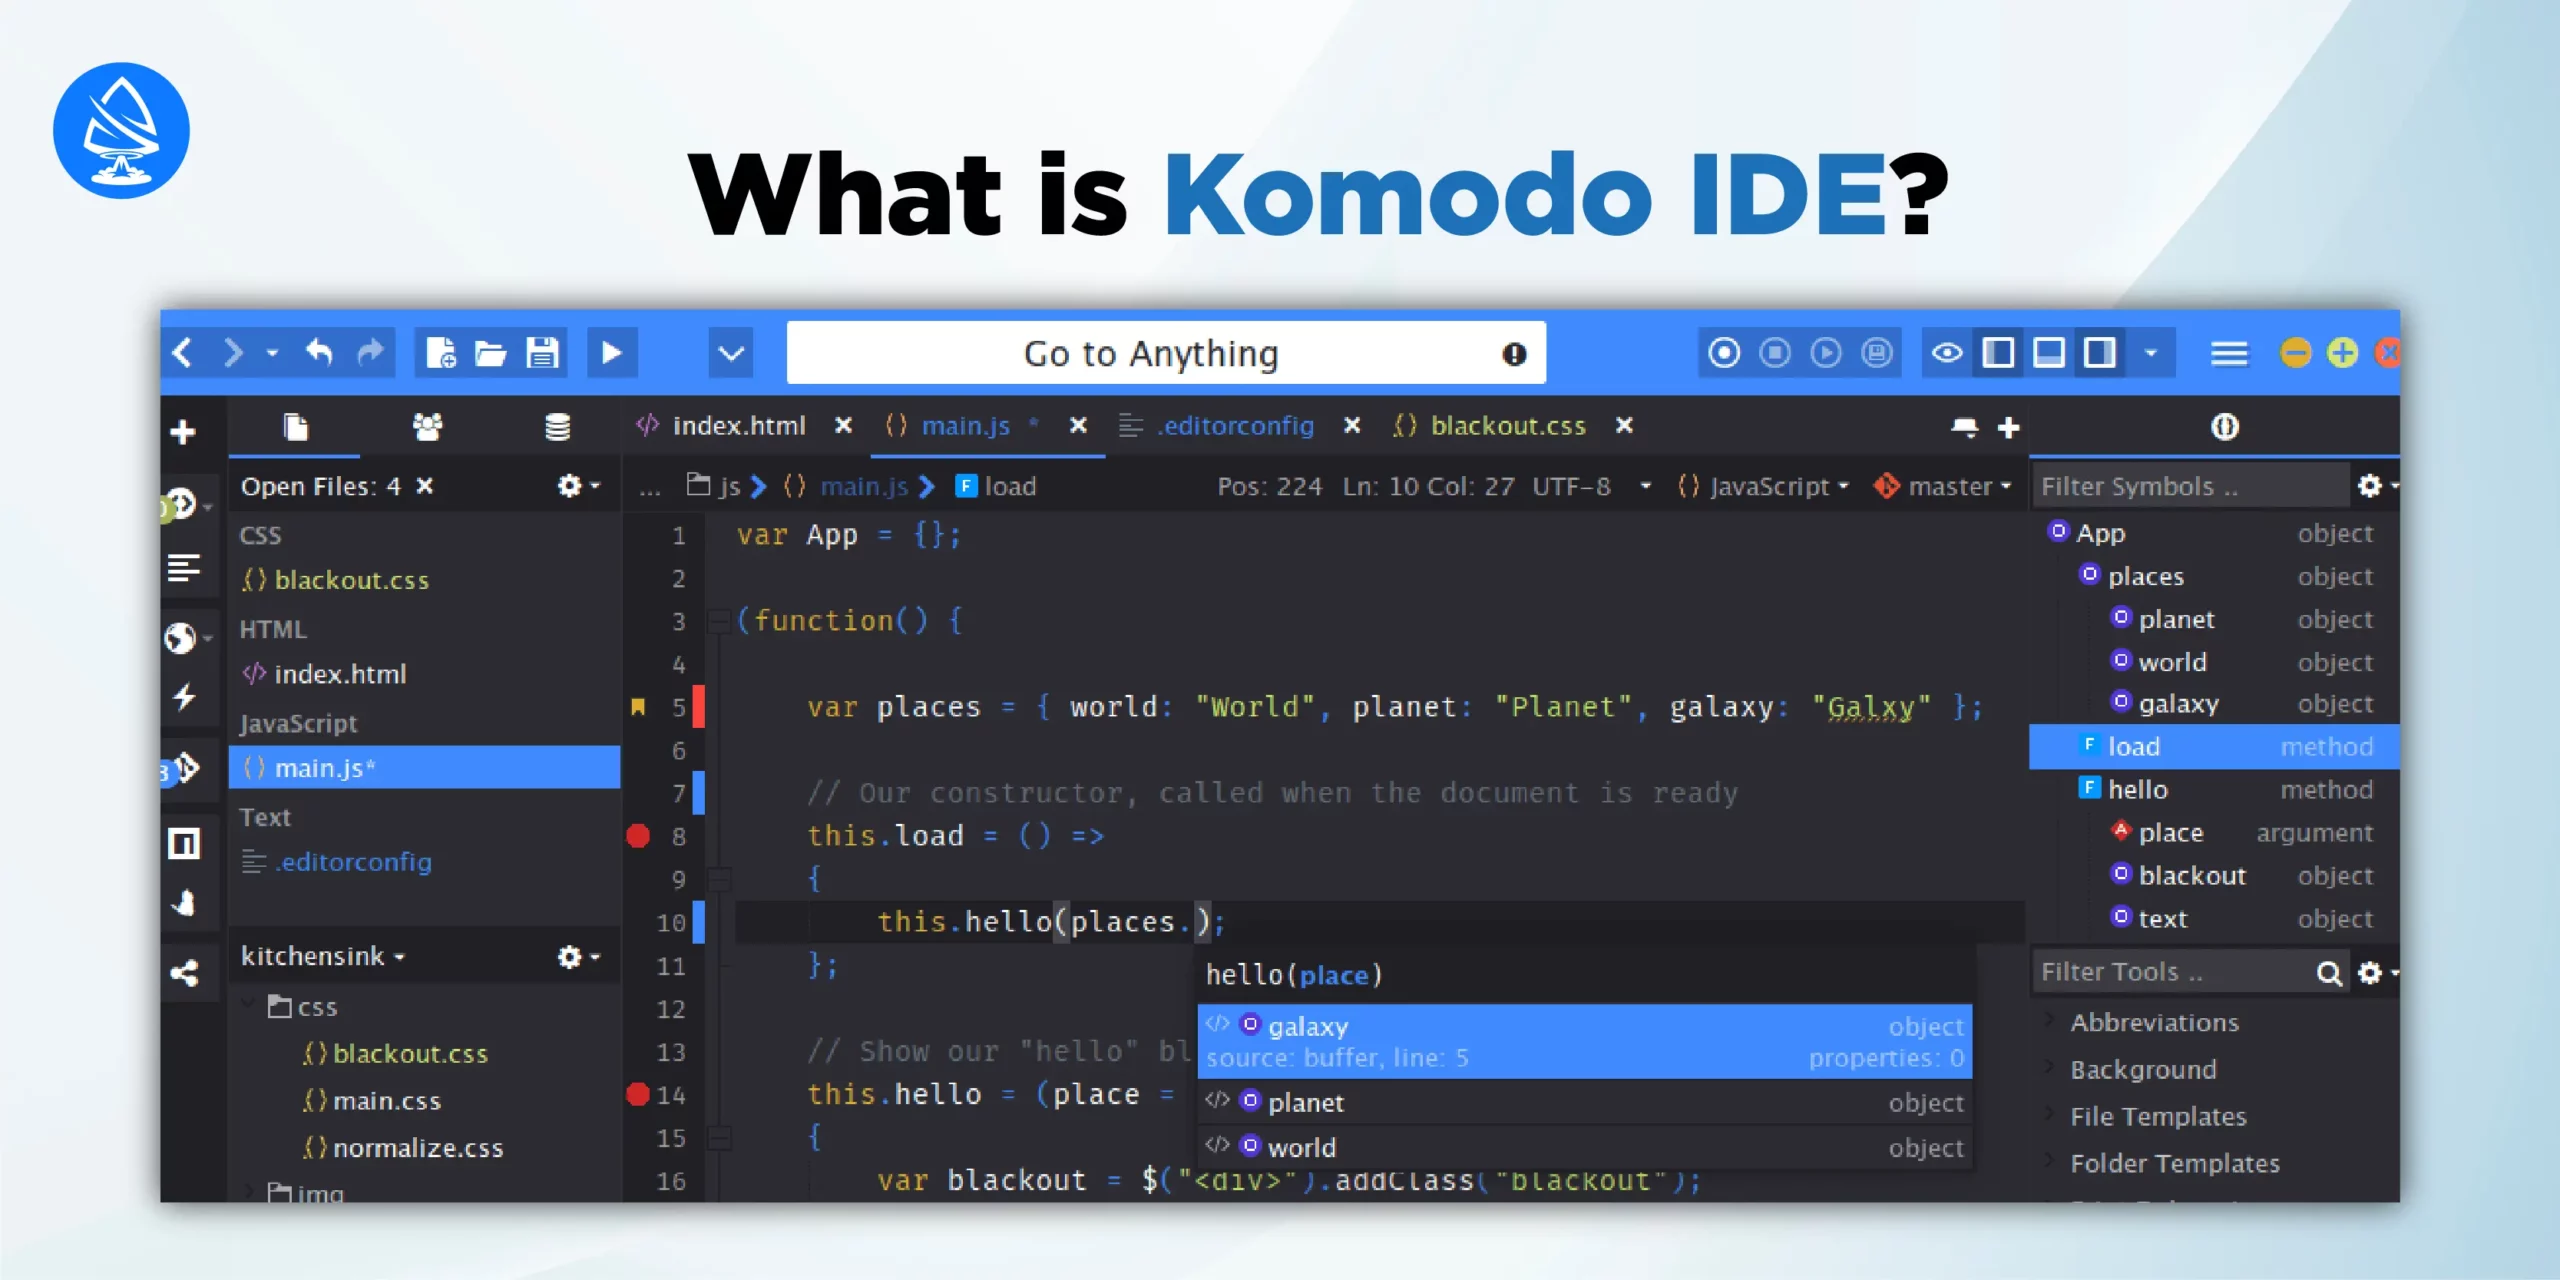 Komodo nodejs IDEs 